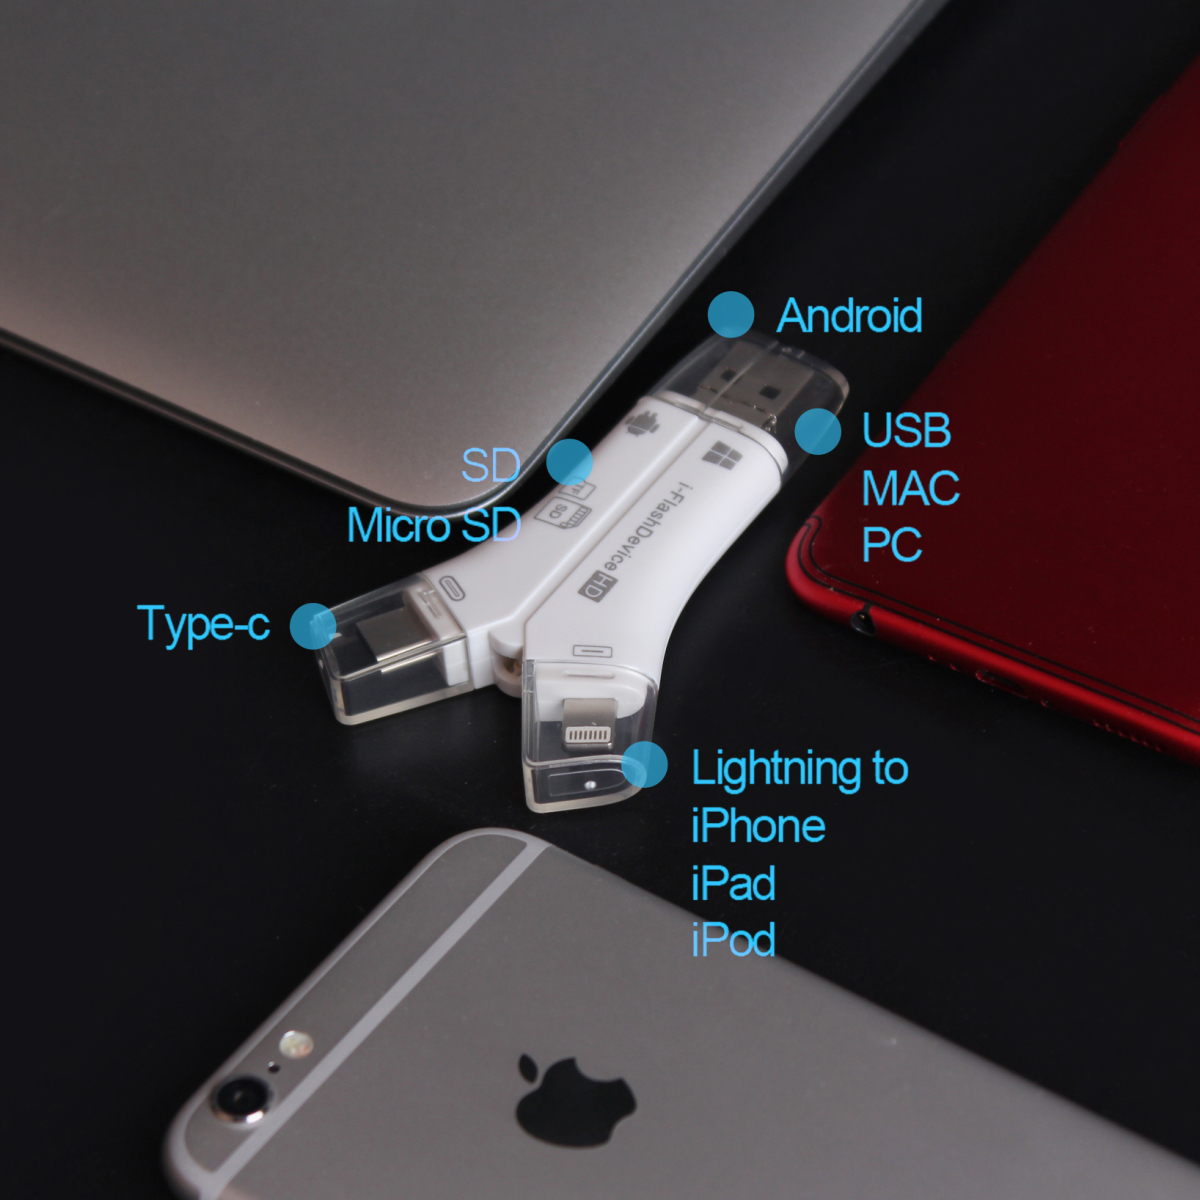 4in1 мульти- SD устройство для считывания карт iPhone Android PC microSD USB регистратор пути (drive recorder) интерактивный Type-C MicroB персональный компьютер iPhone Android смартфон многофункциональный 